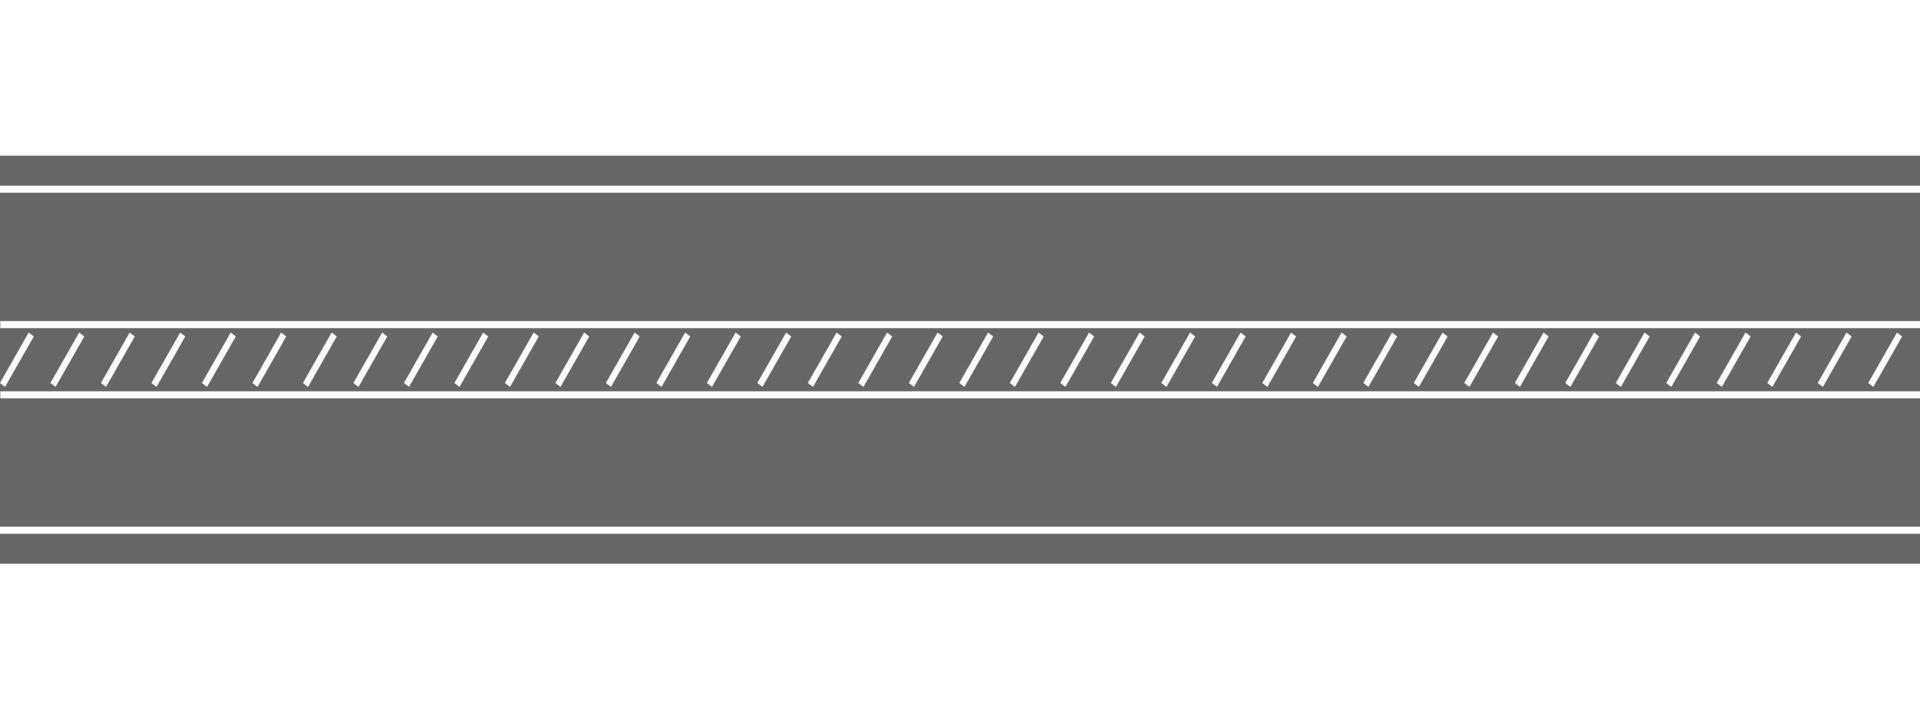 tömma hetero väg topp se. motorväg märkning med diagonal Ränder. sömlös horisontell körbana mall. transport element av stad Karta vektor